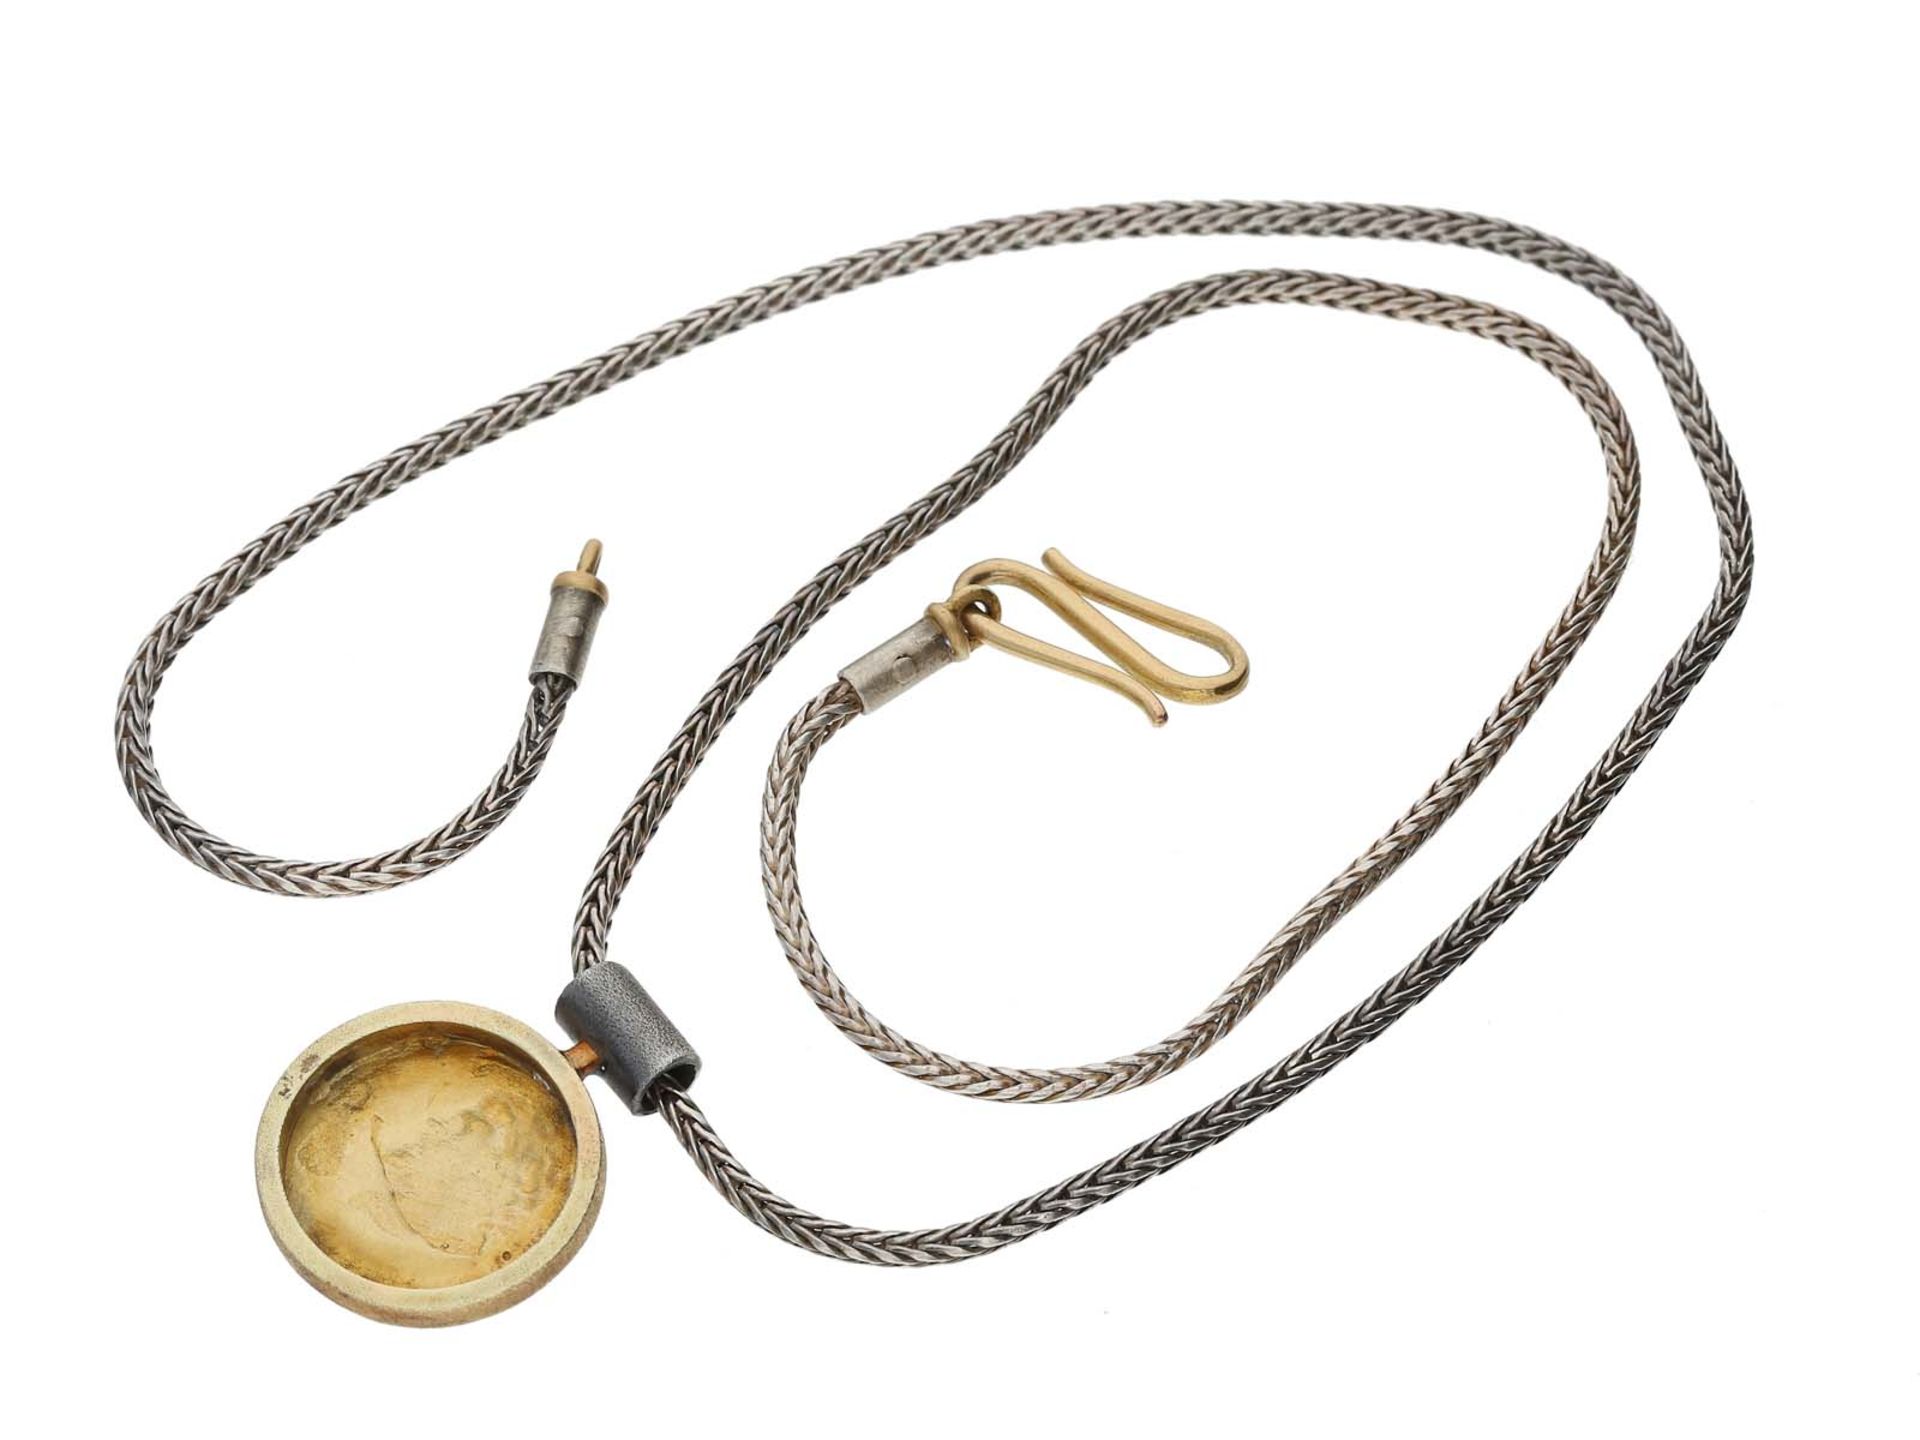 Kette/Collier/Anhänger: silberne Schlangenkette mit goldenem Anhänger, Schauseite Nachprägung einer - Image 2 of 2